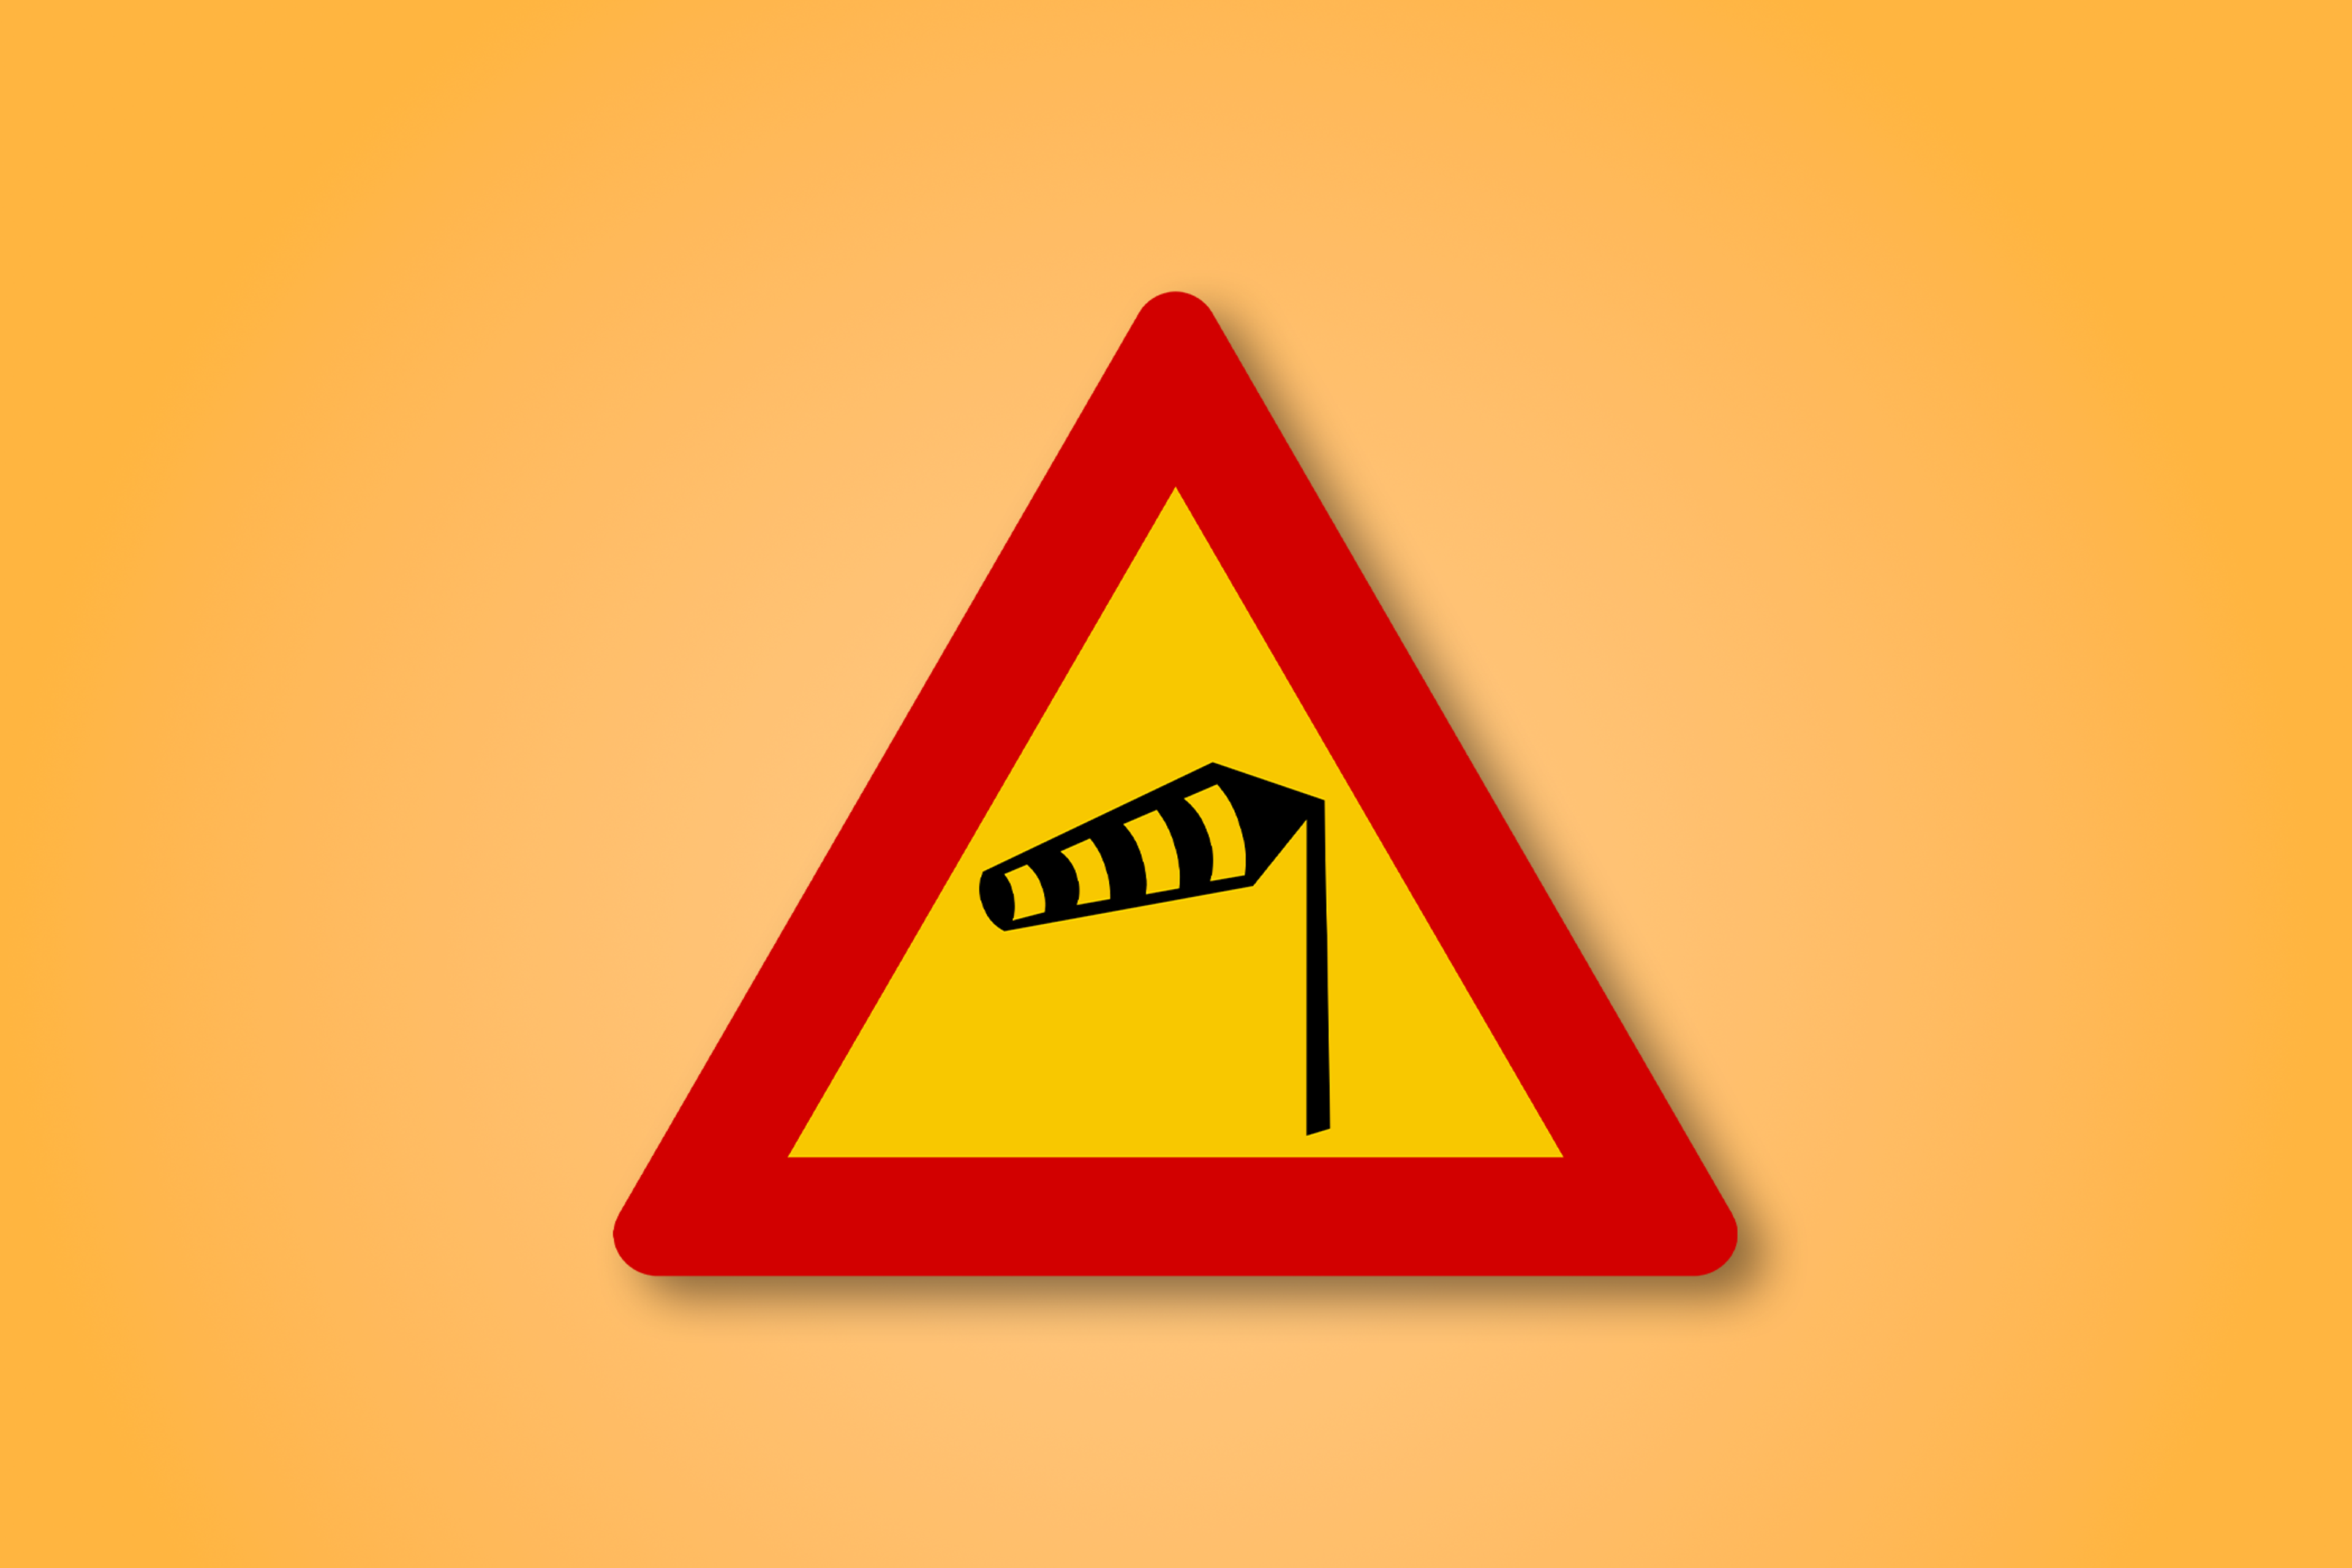 一块红色和黄色的三角形路标，中间有风的图标。这个路标表示侧风。